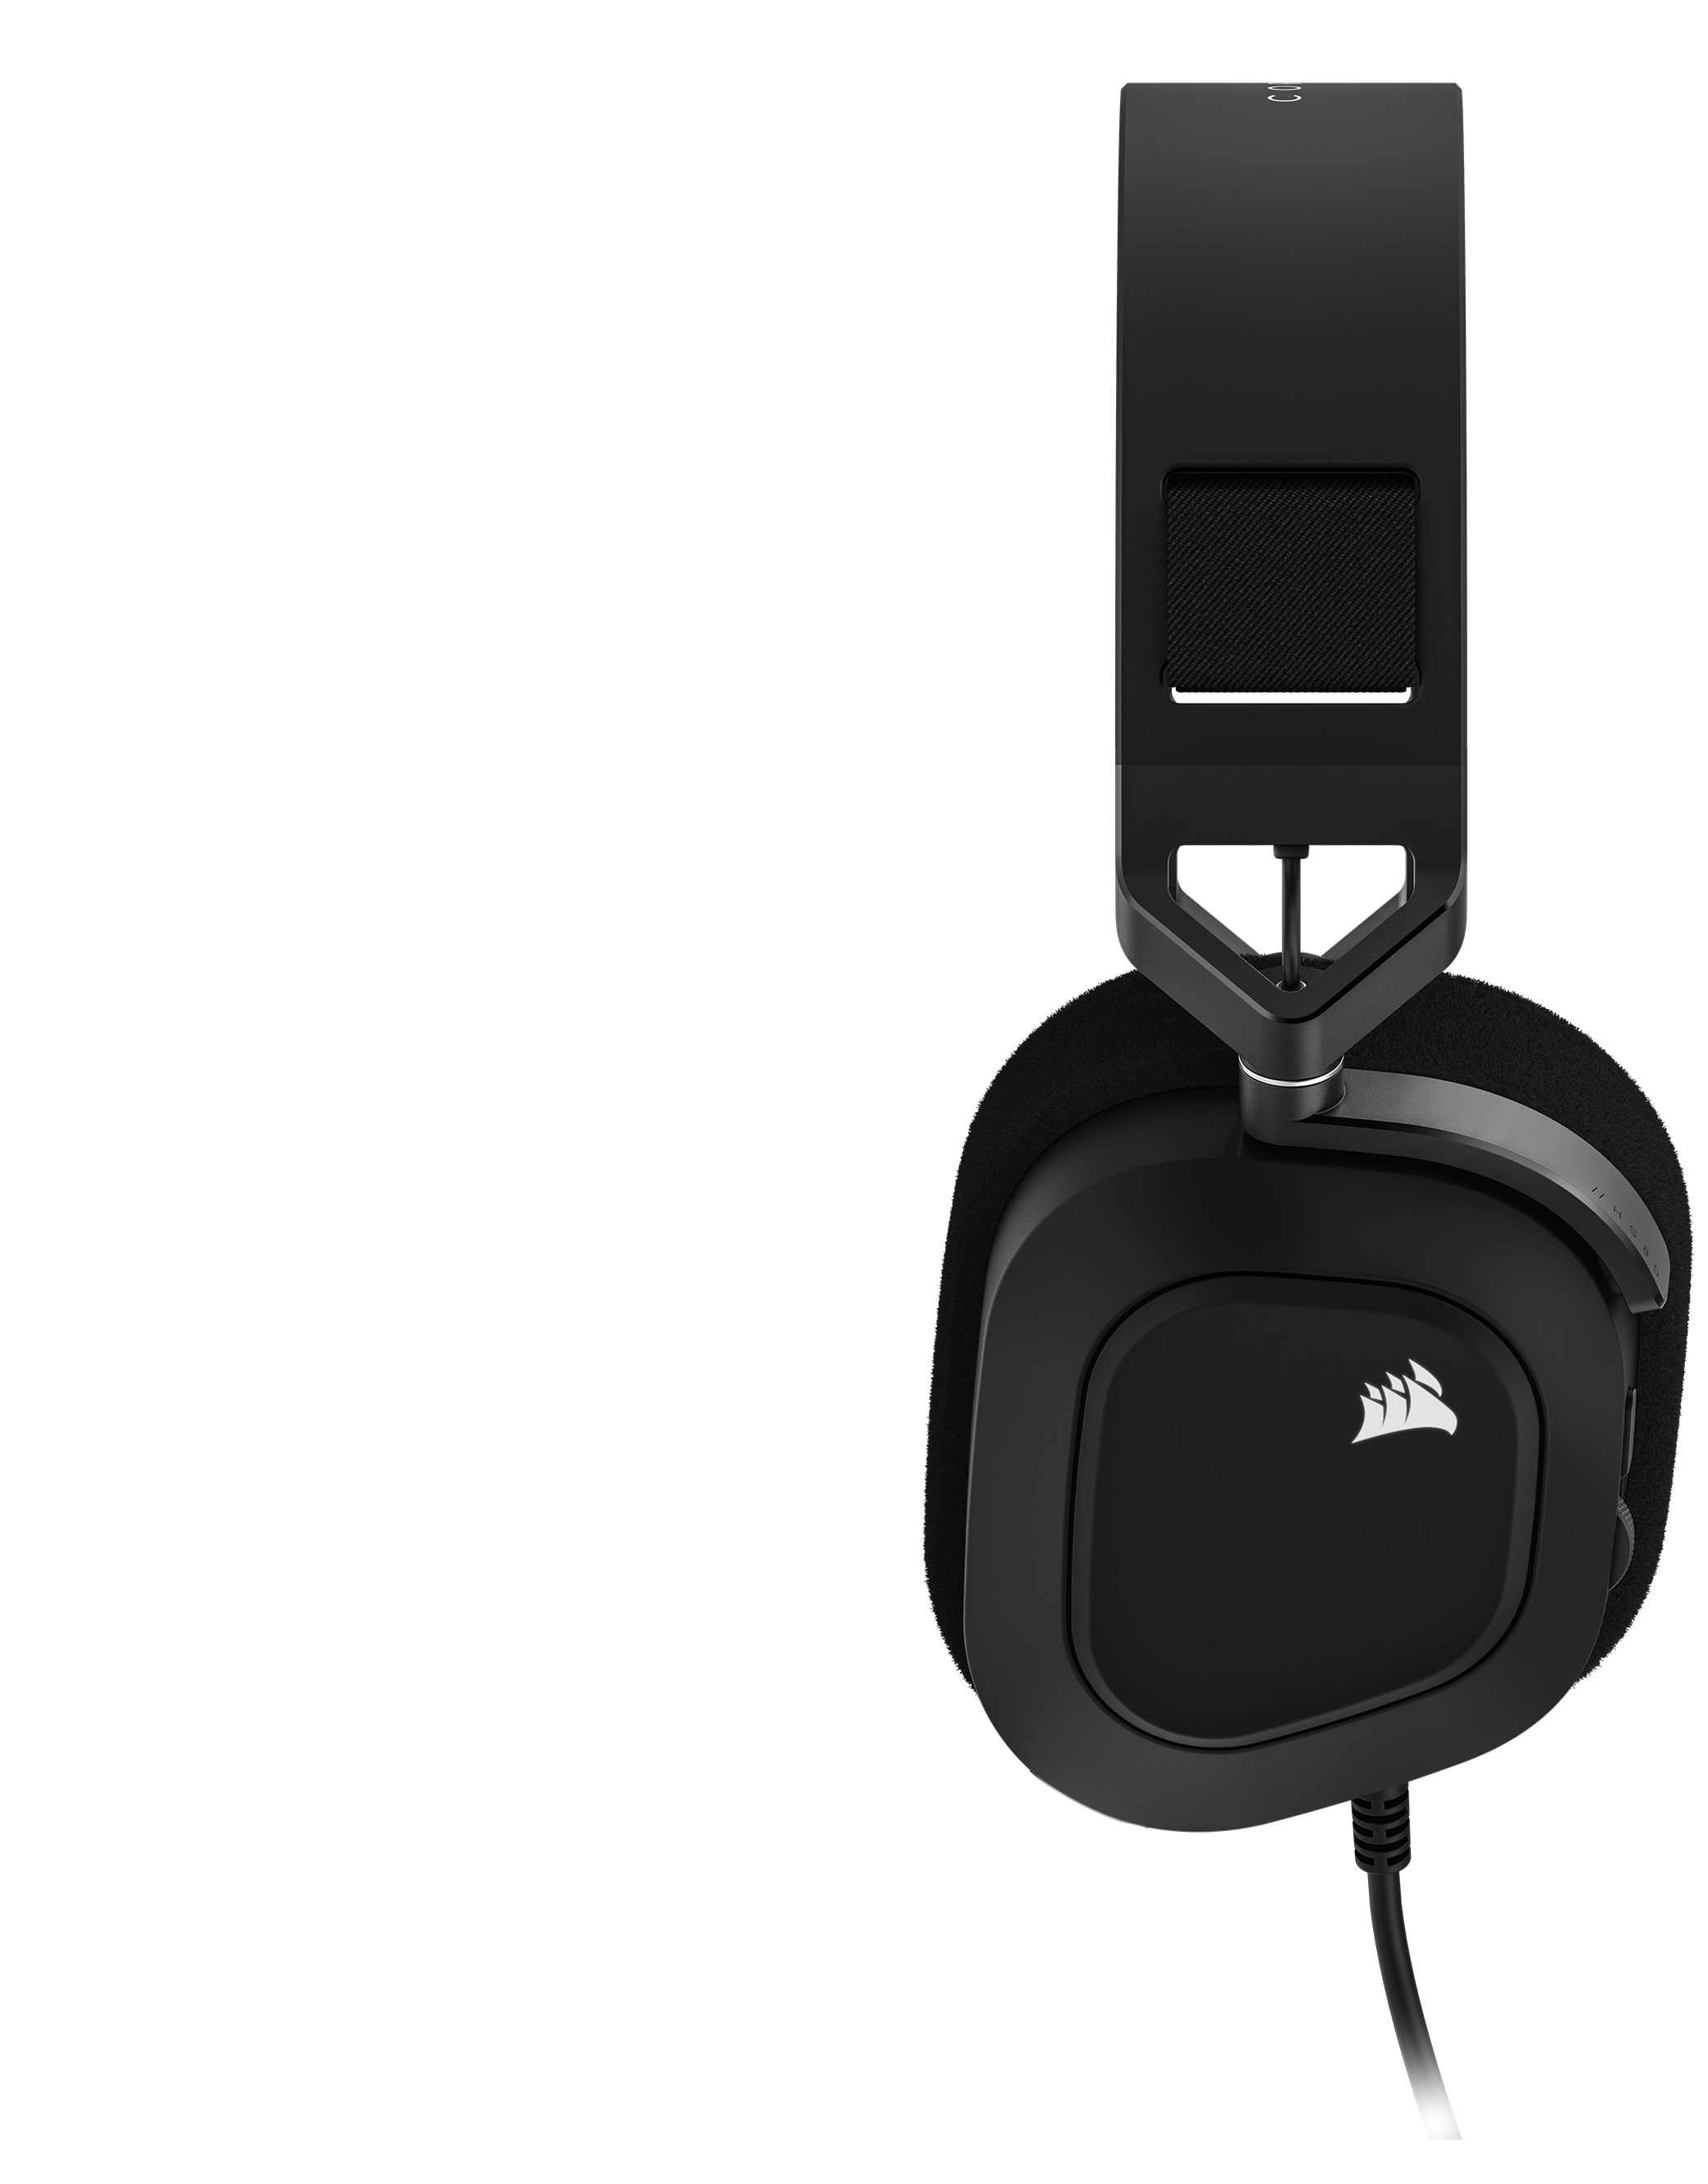 Vista de perfil lateral de los auriculares para juegos con cable HS80 RGB USB, con botón interactivo que muestra el micrófono que se silencia al abatirse.